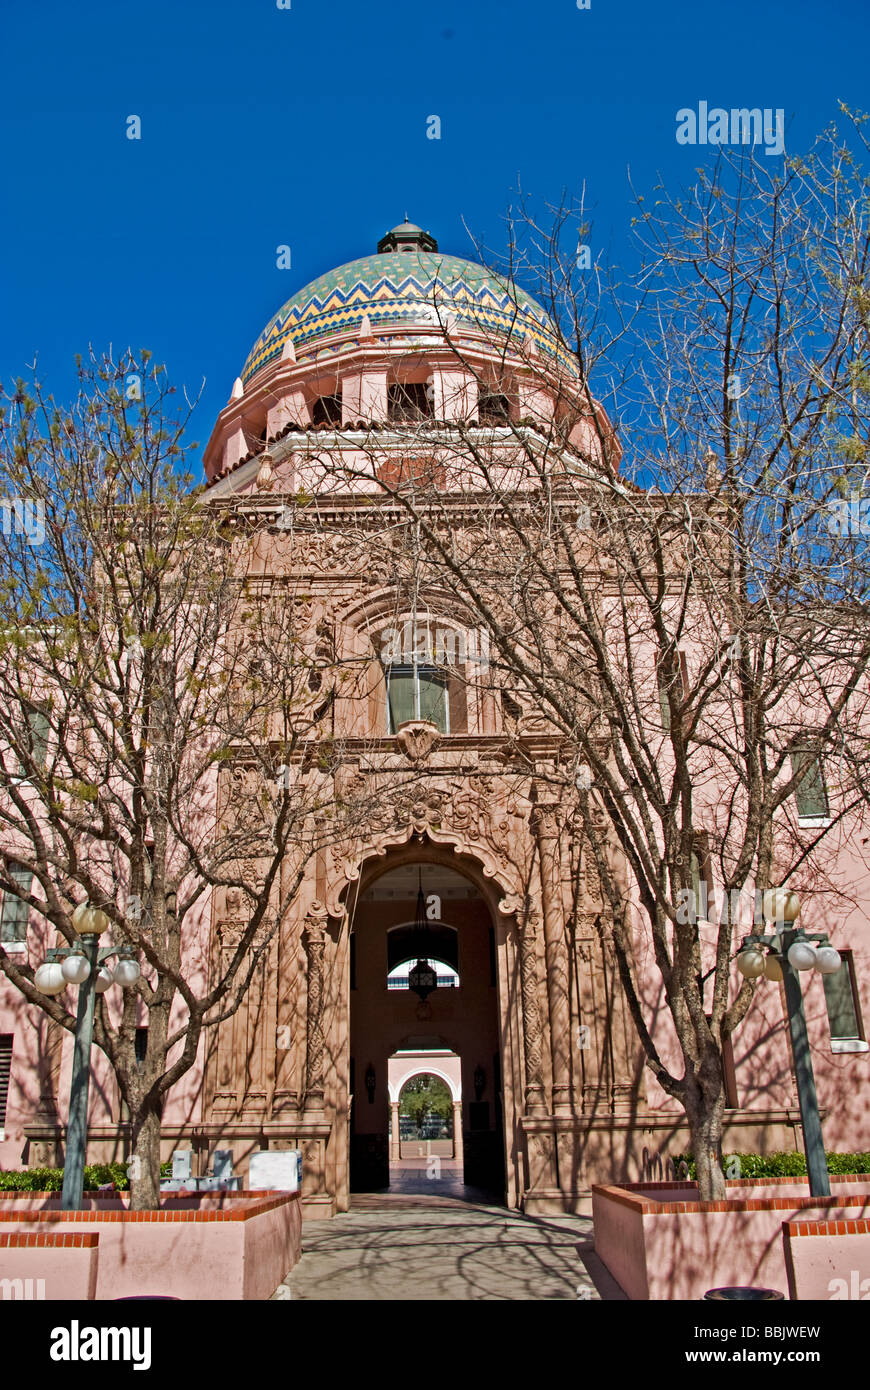 USA Arizona Tucson Pima County Courthouse mauresque espagnol colonial coupole en tuiles de mosaïque Banque D'Images